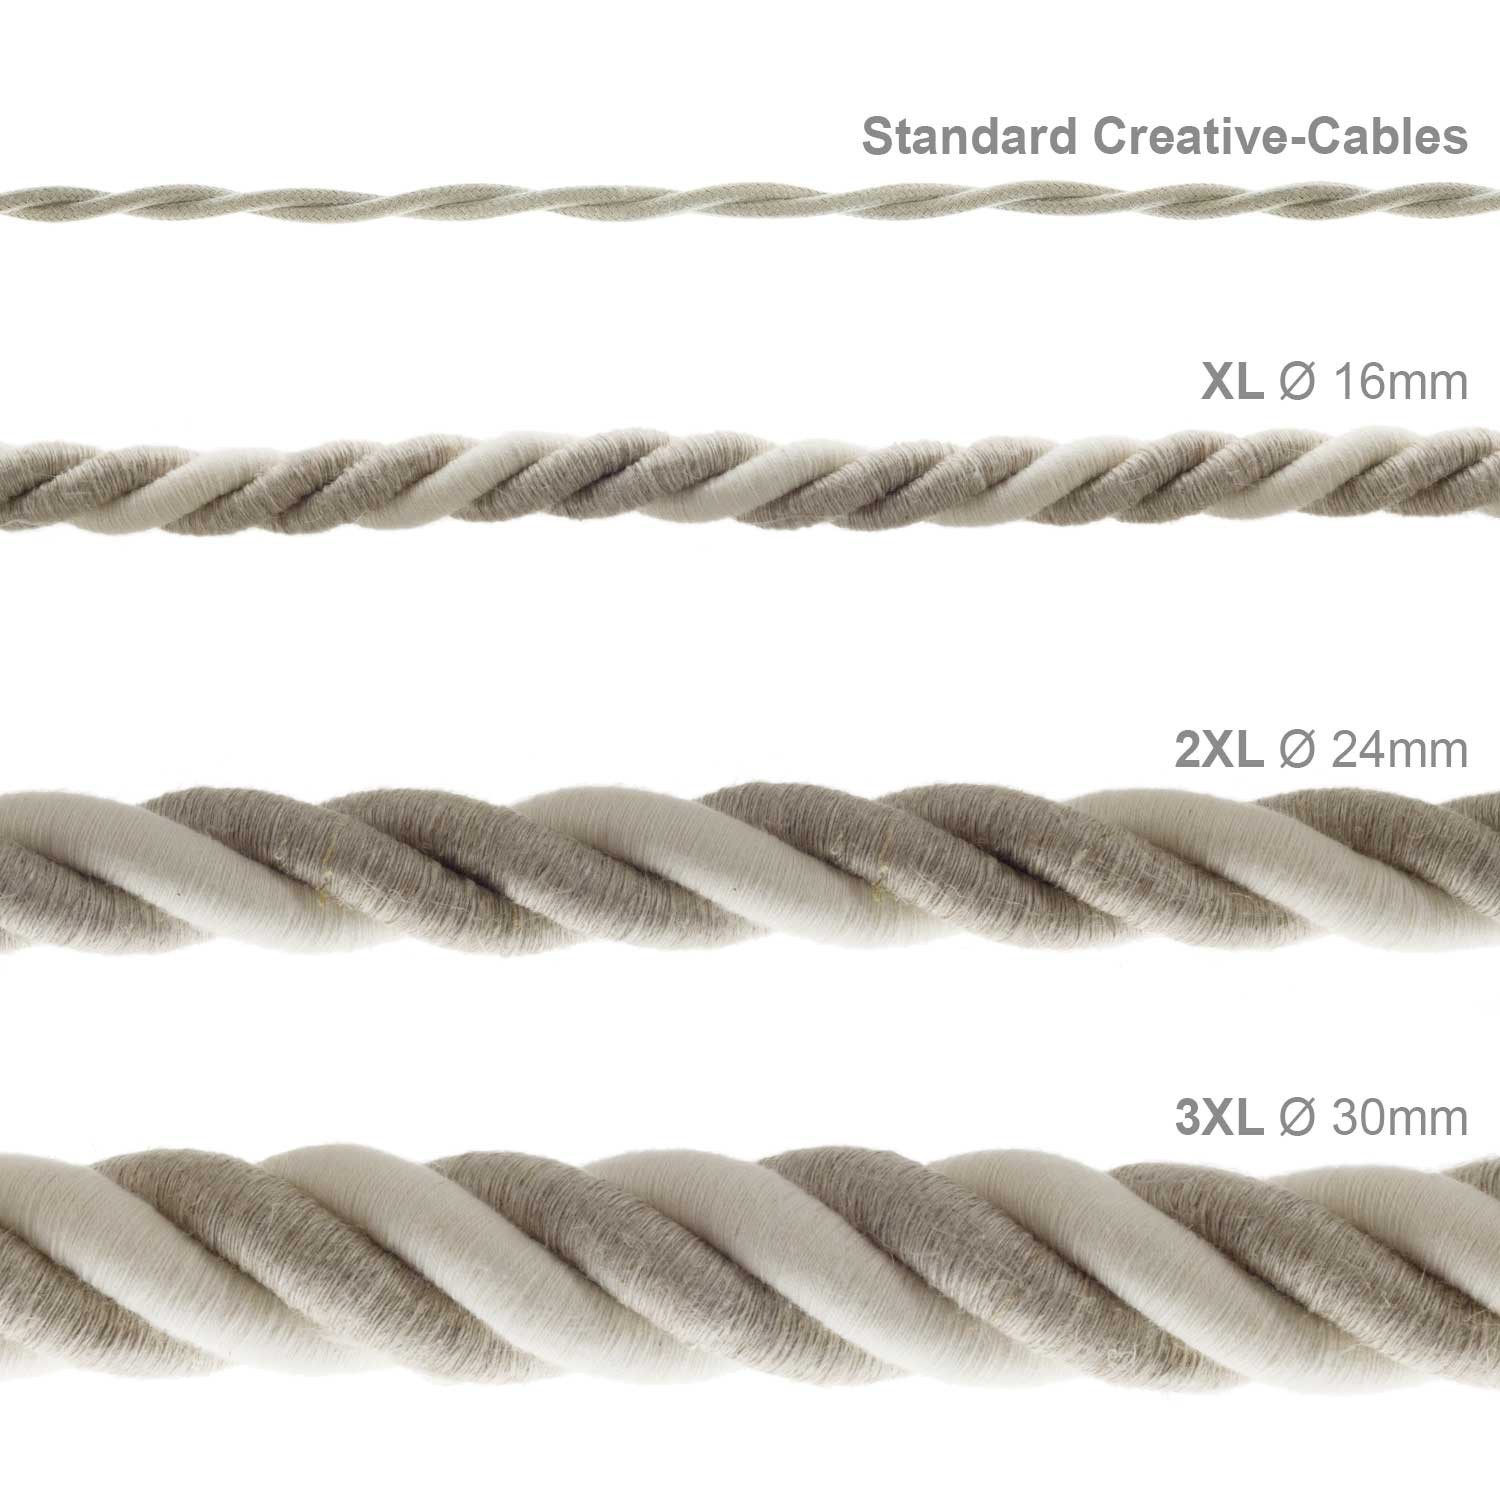 Electrische 2XL touwkabel, 3 x 0,75 mm. Binnenkabels bedekt met textiel, katoen en natuurlijk linnen. Diameter 24 mm.